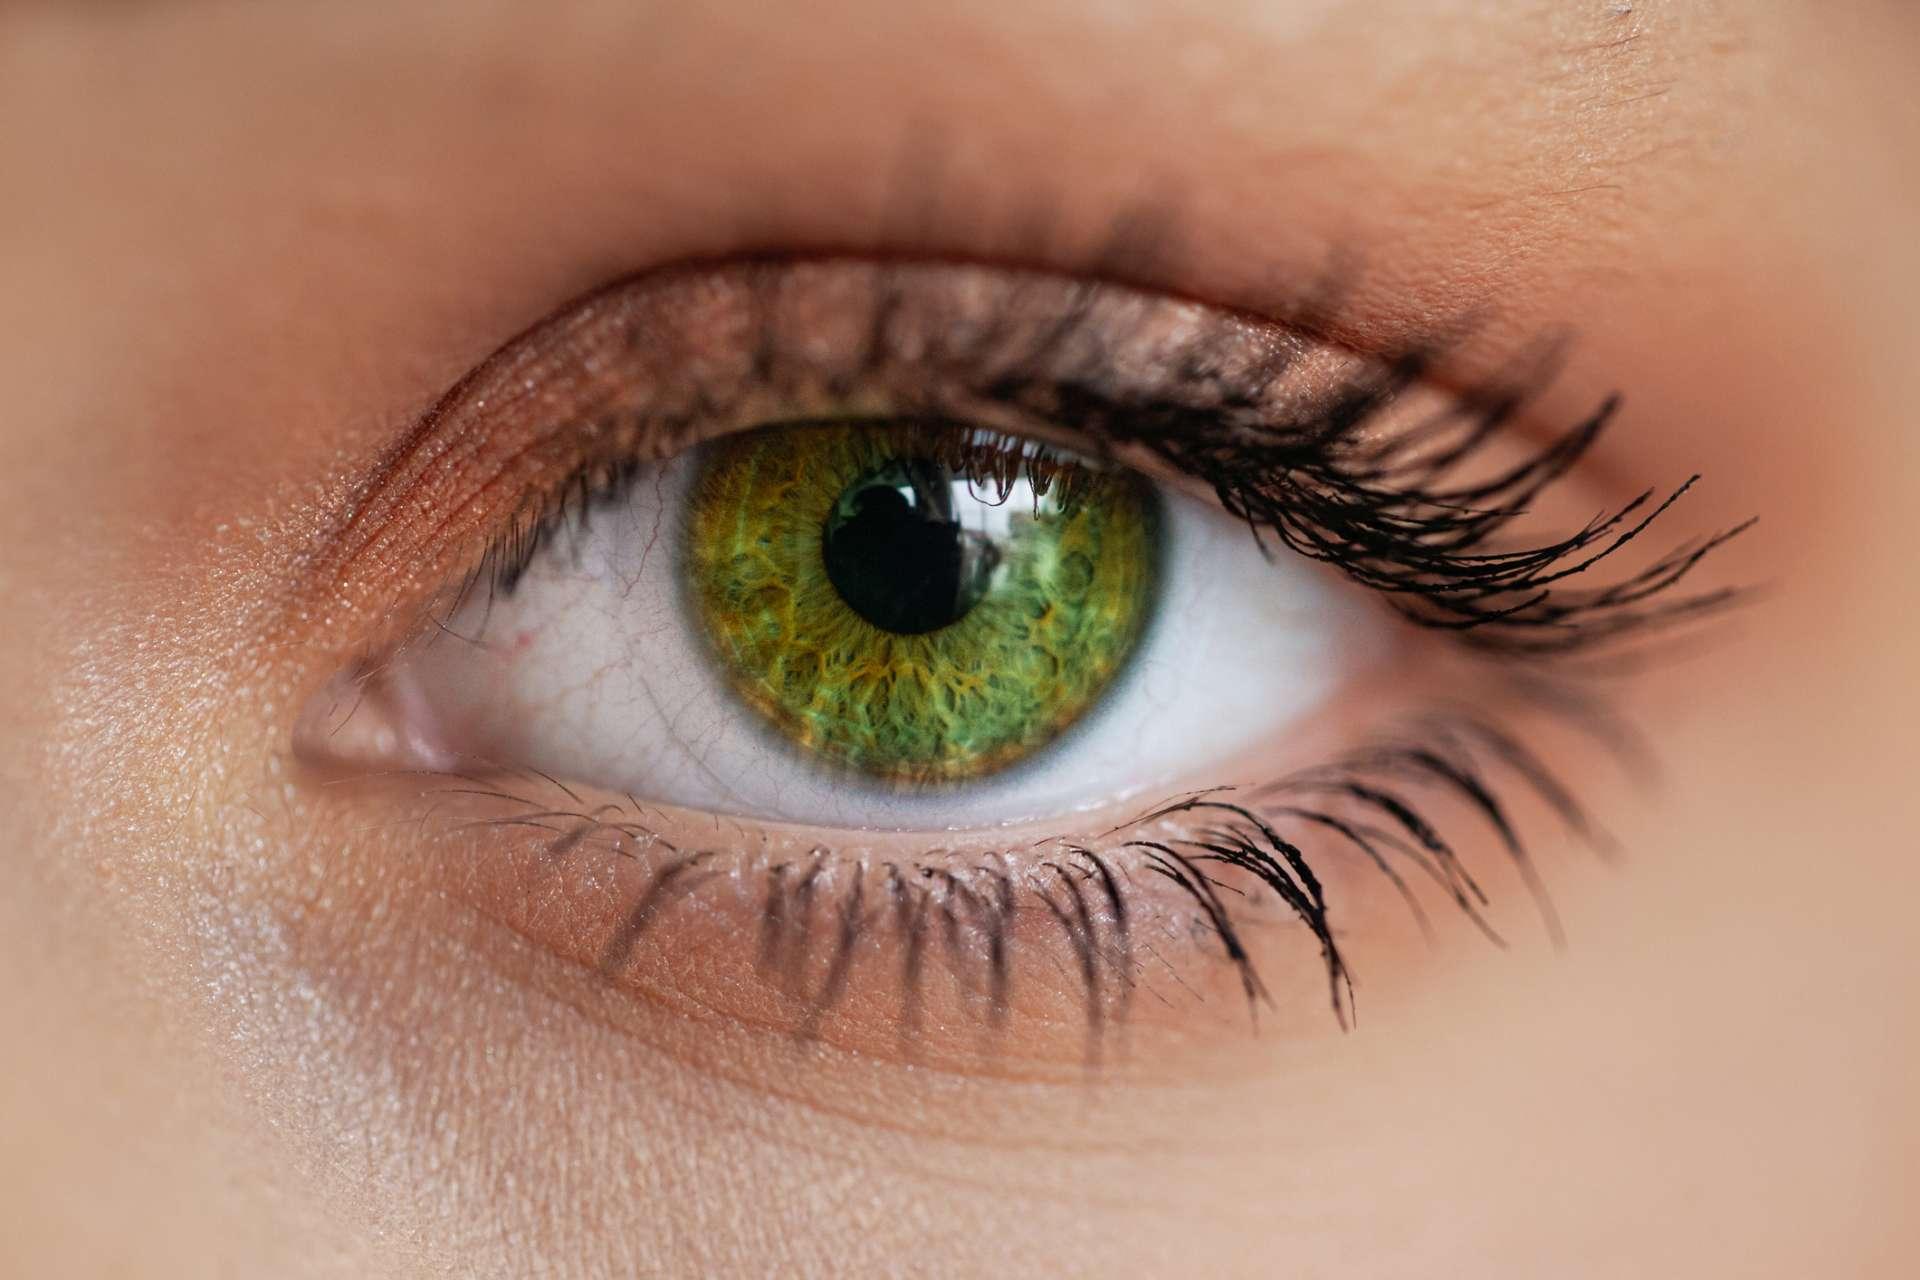 Close-up eines grünen Auges mit dezentem Makeup.